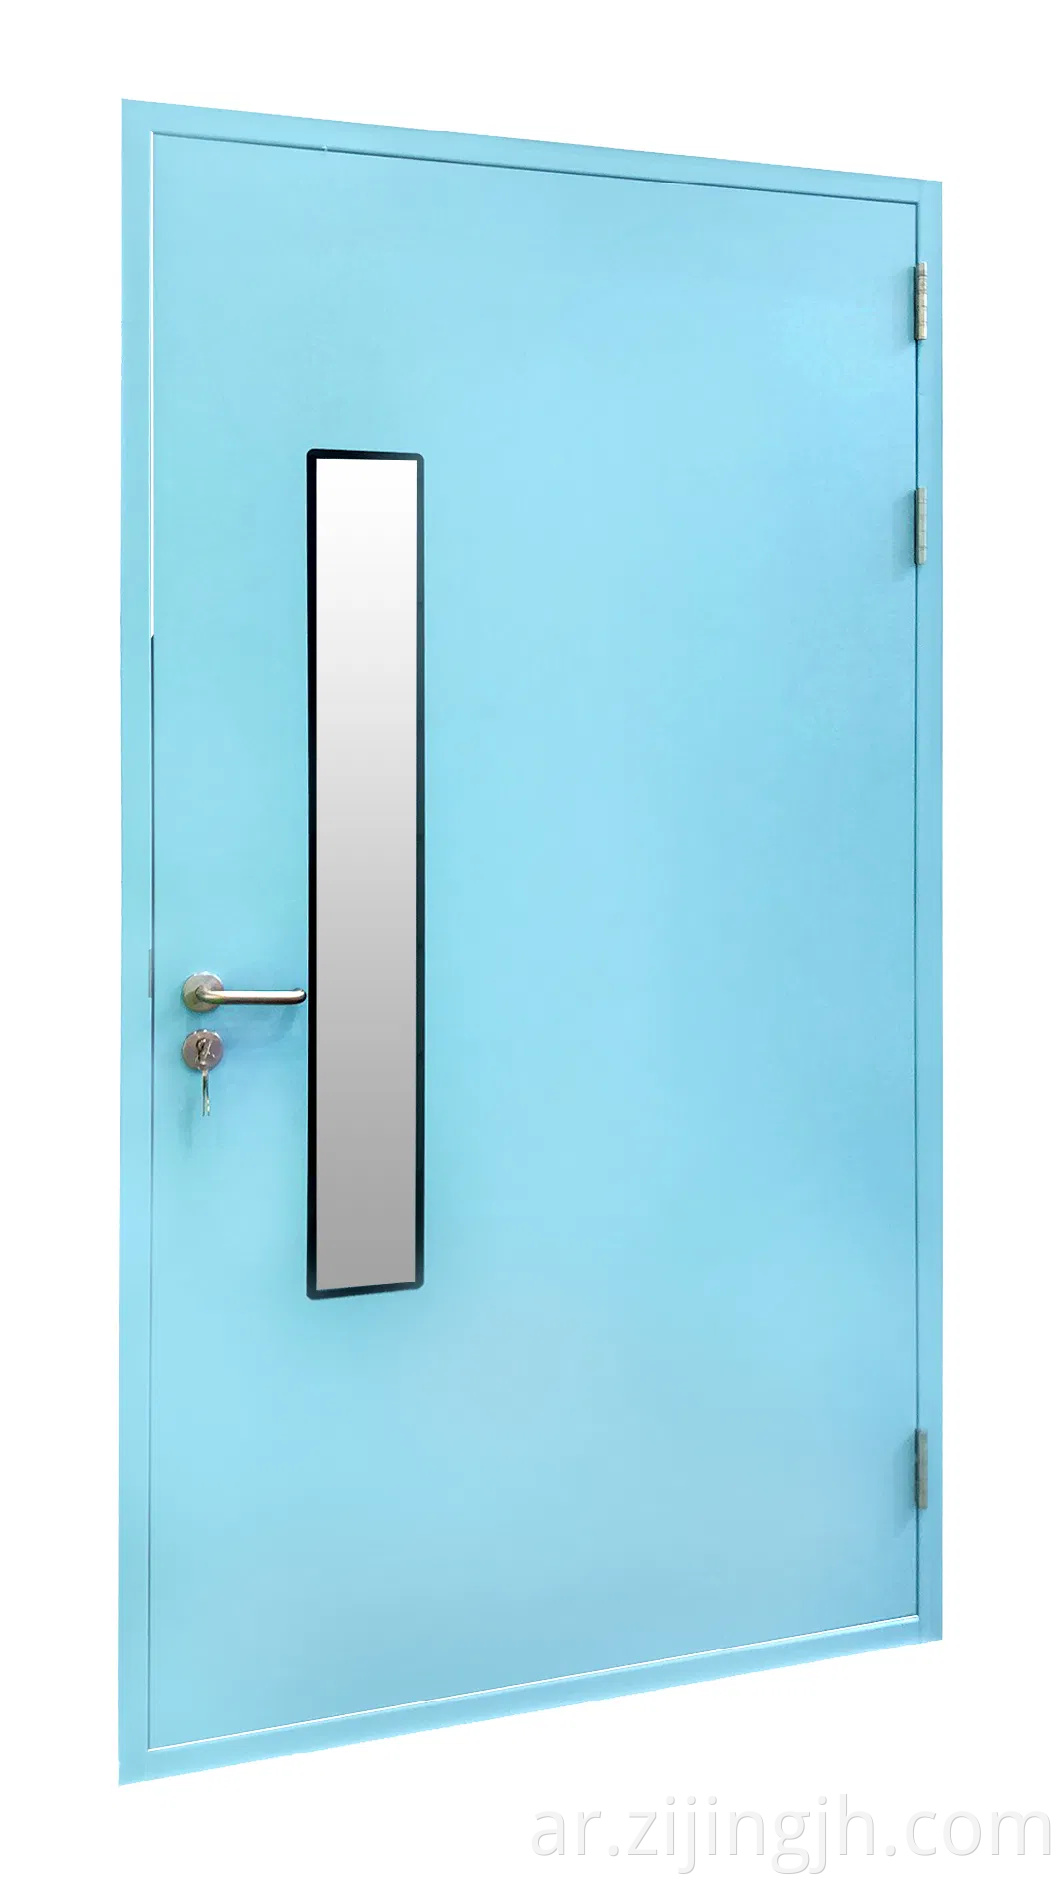 باب غرفة تنظيف الصلب يستخدم في صناعة المواد الغذائية ومختبر Bio مع ISO9001